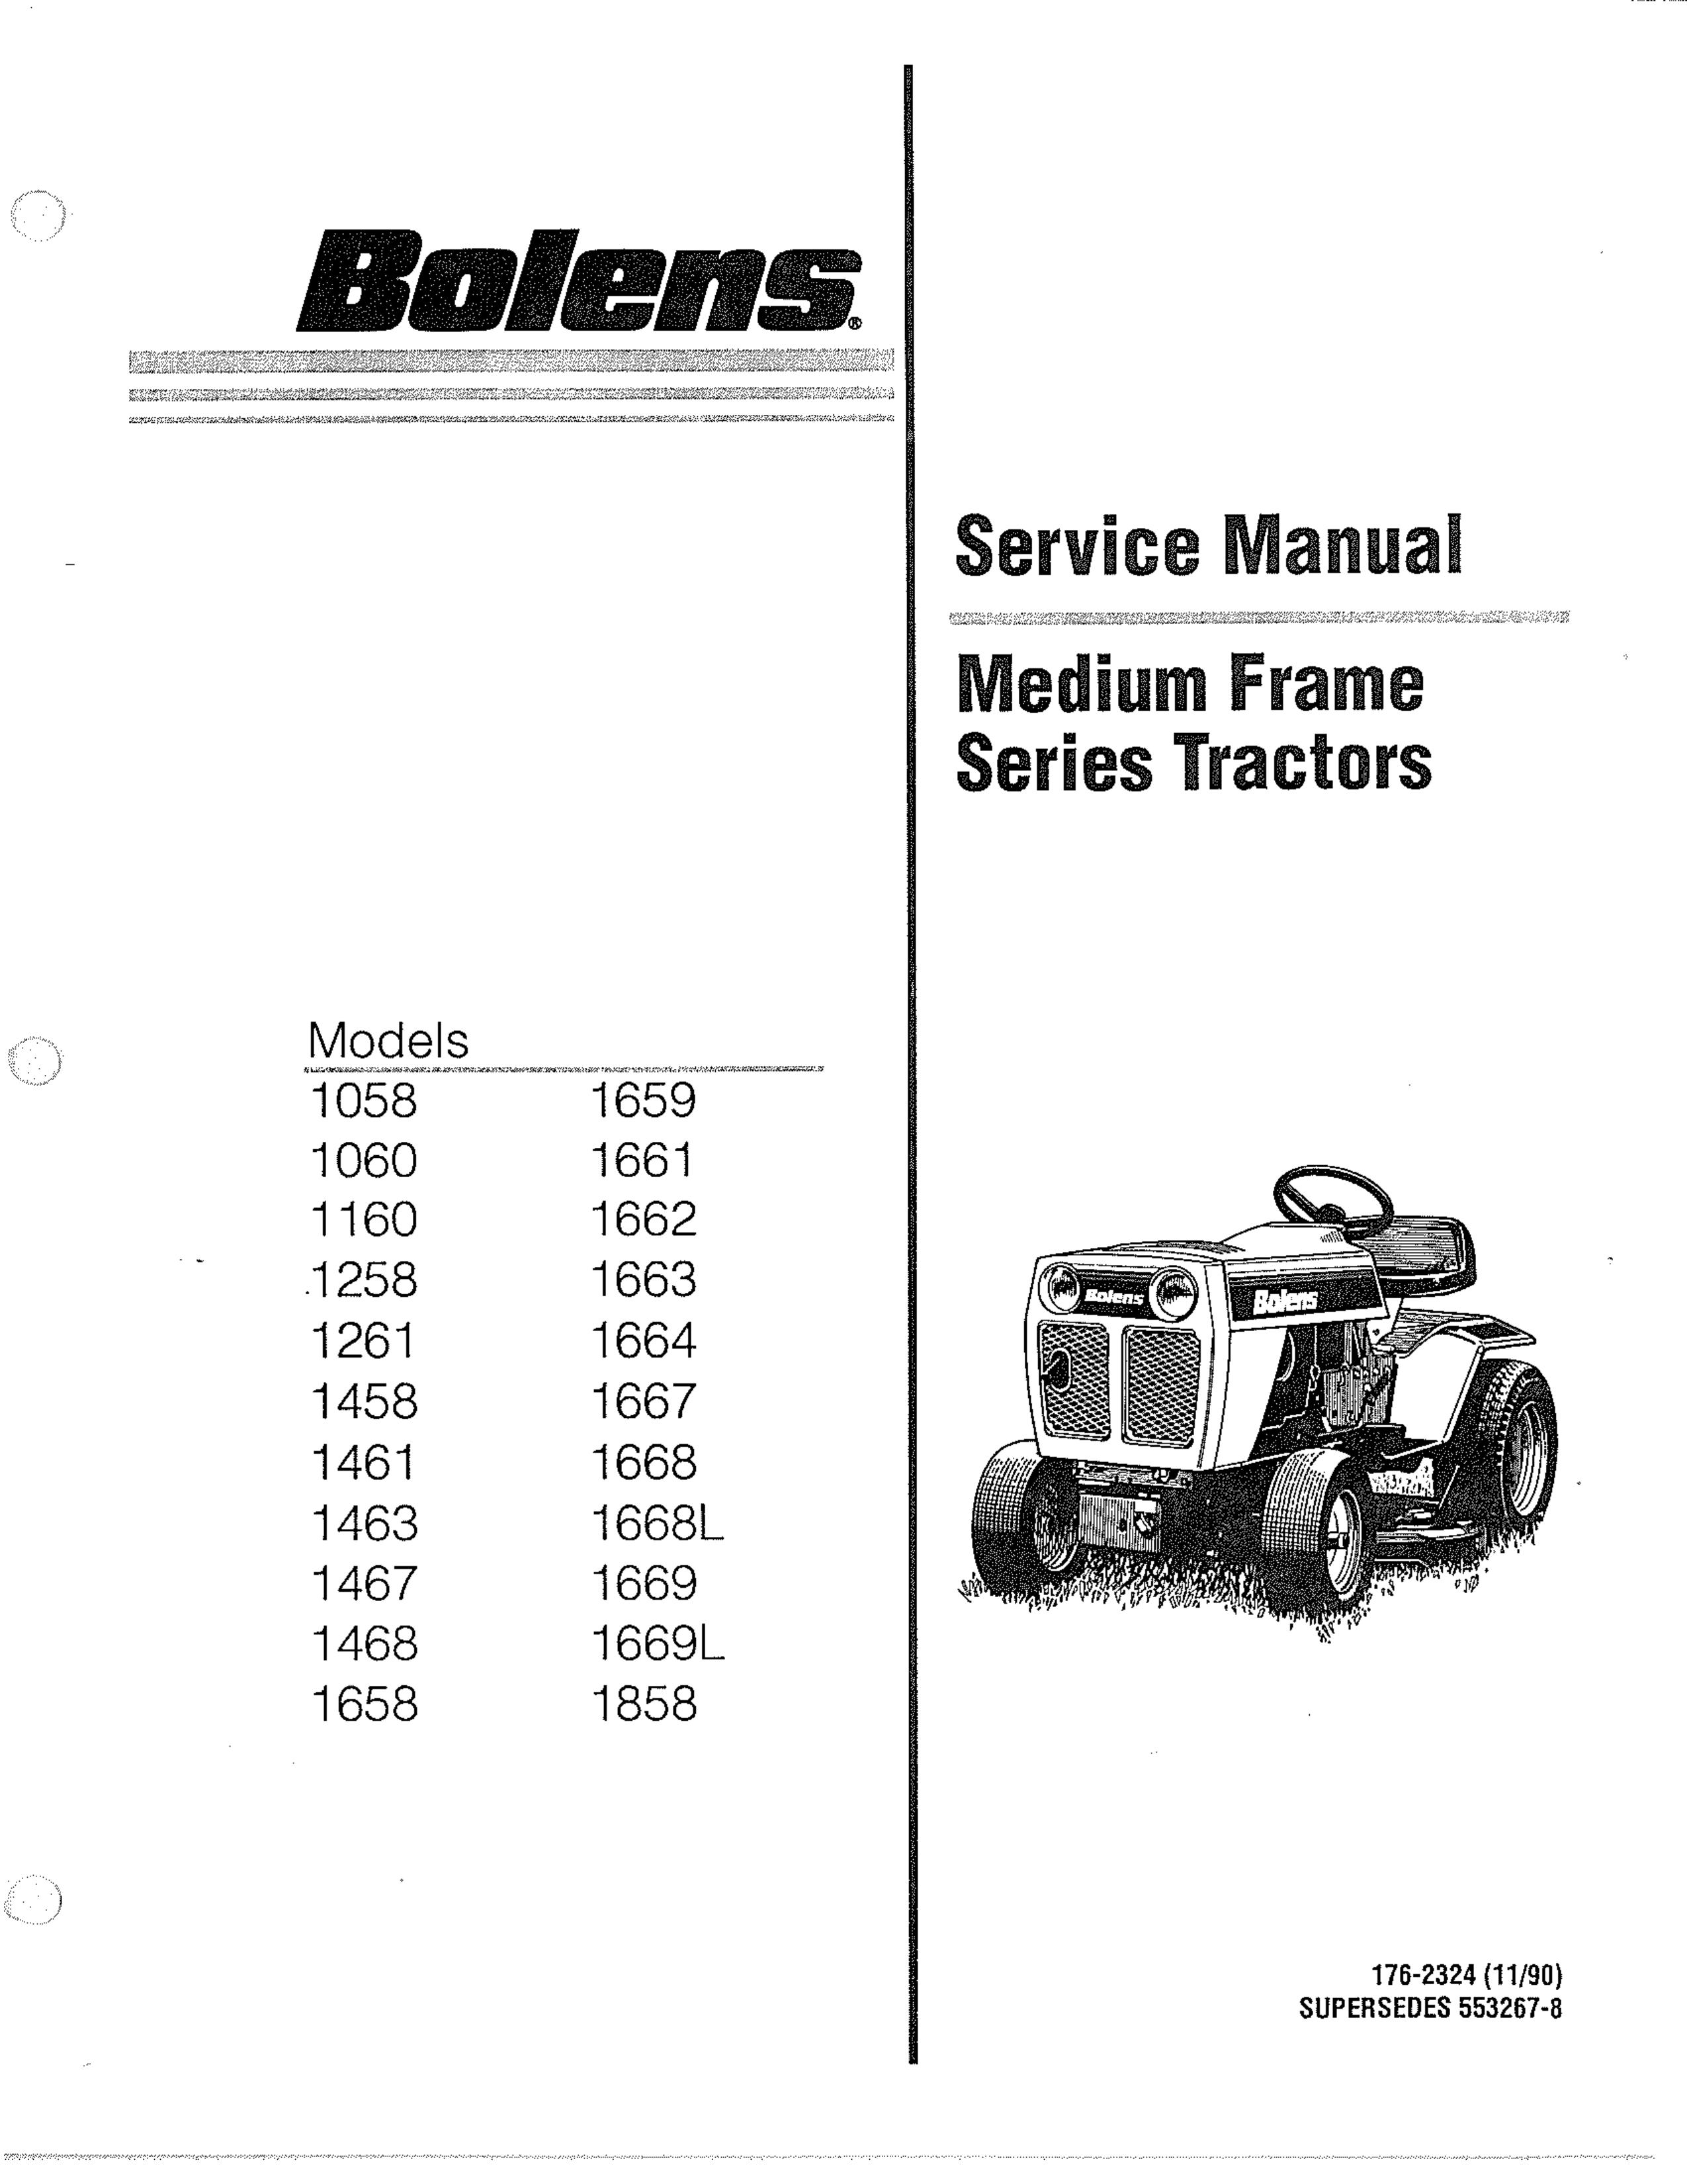 Bolens 1060 Lawn Mower User Manual